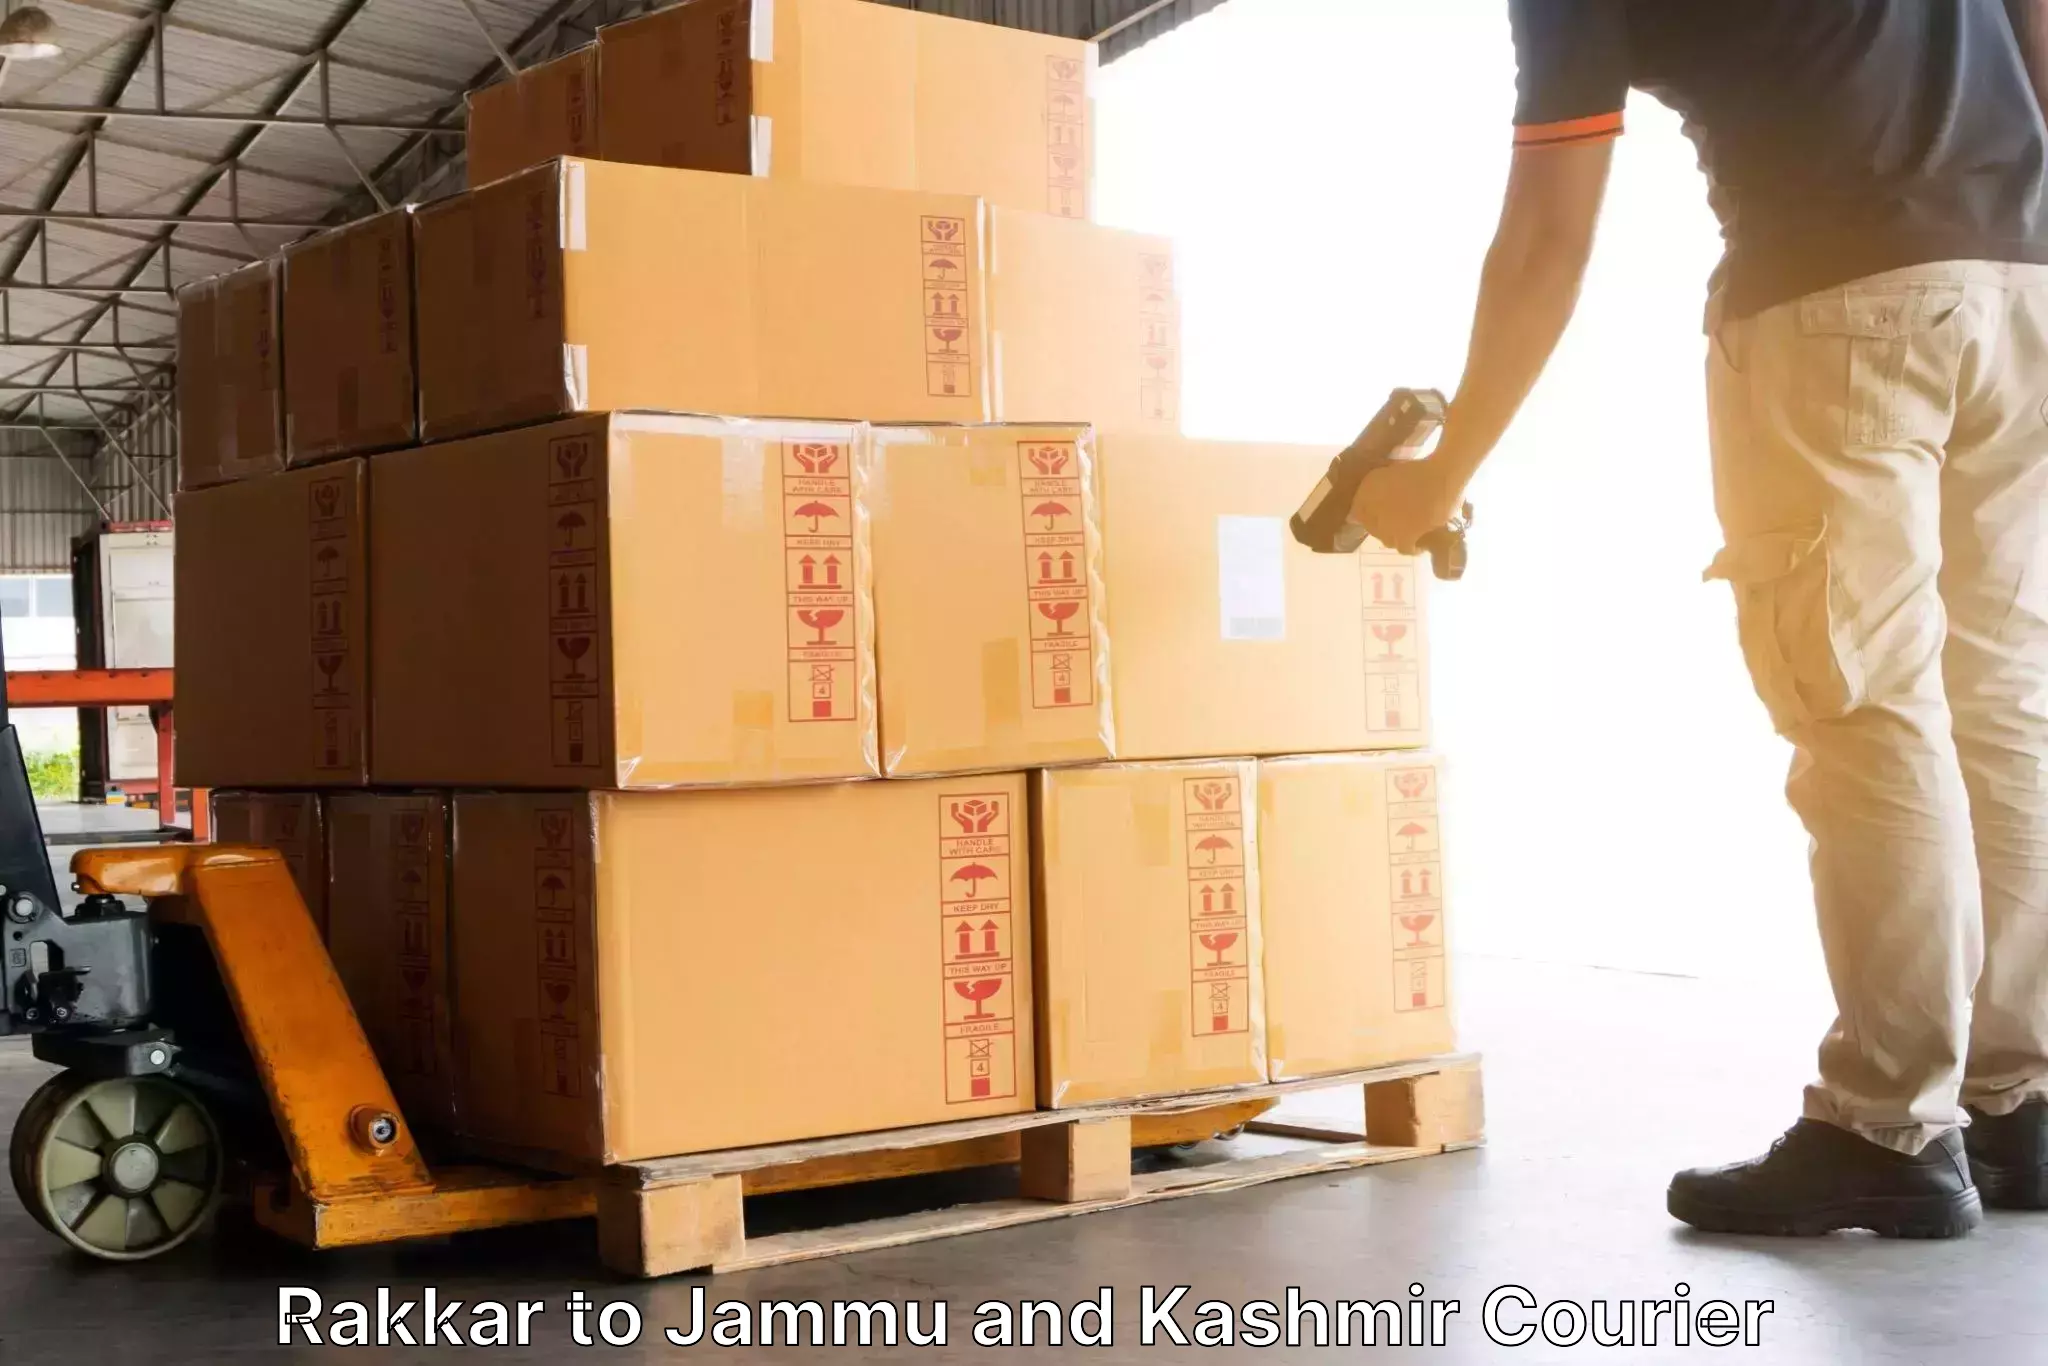 Efficient parcel service in Rakkar to Kishtwar